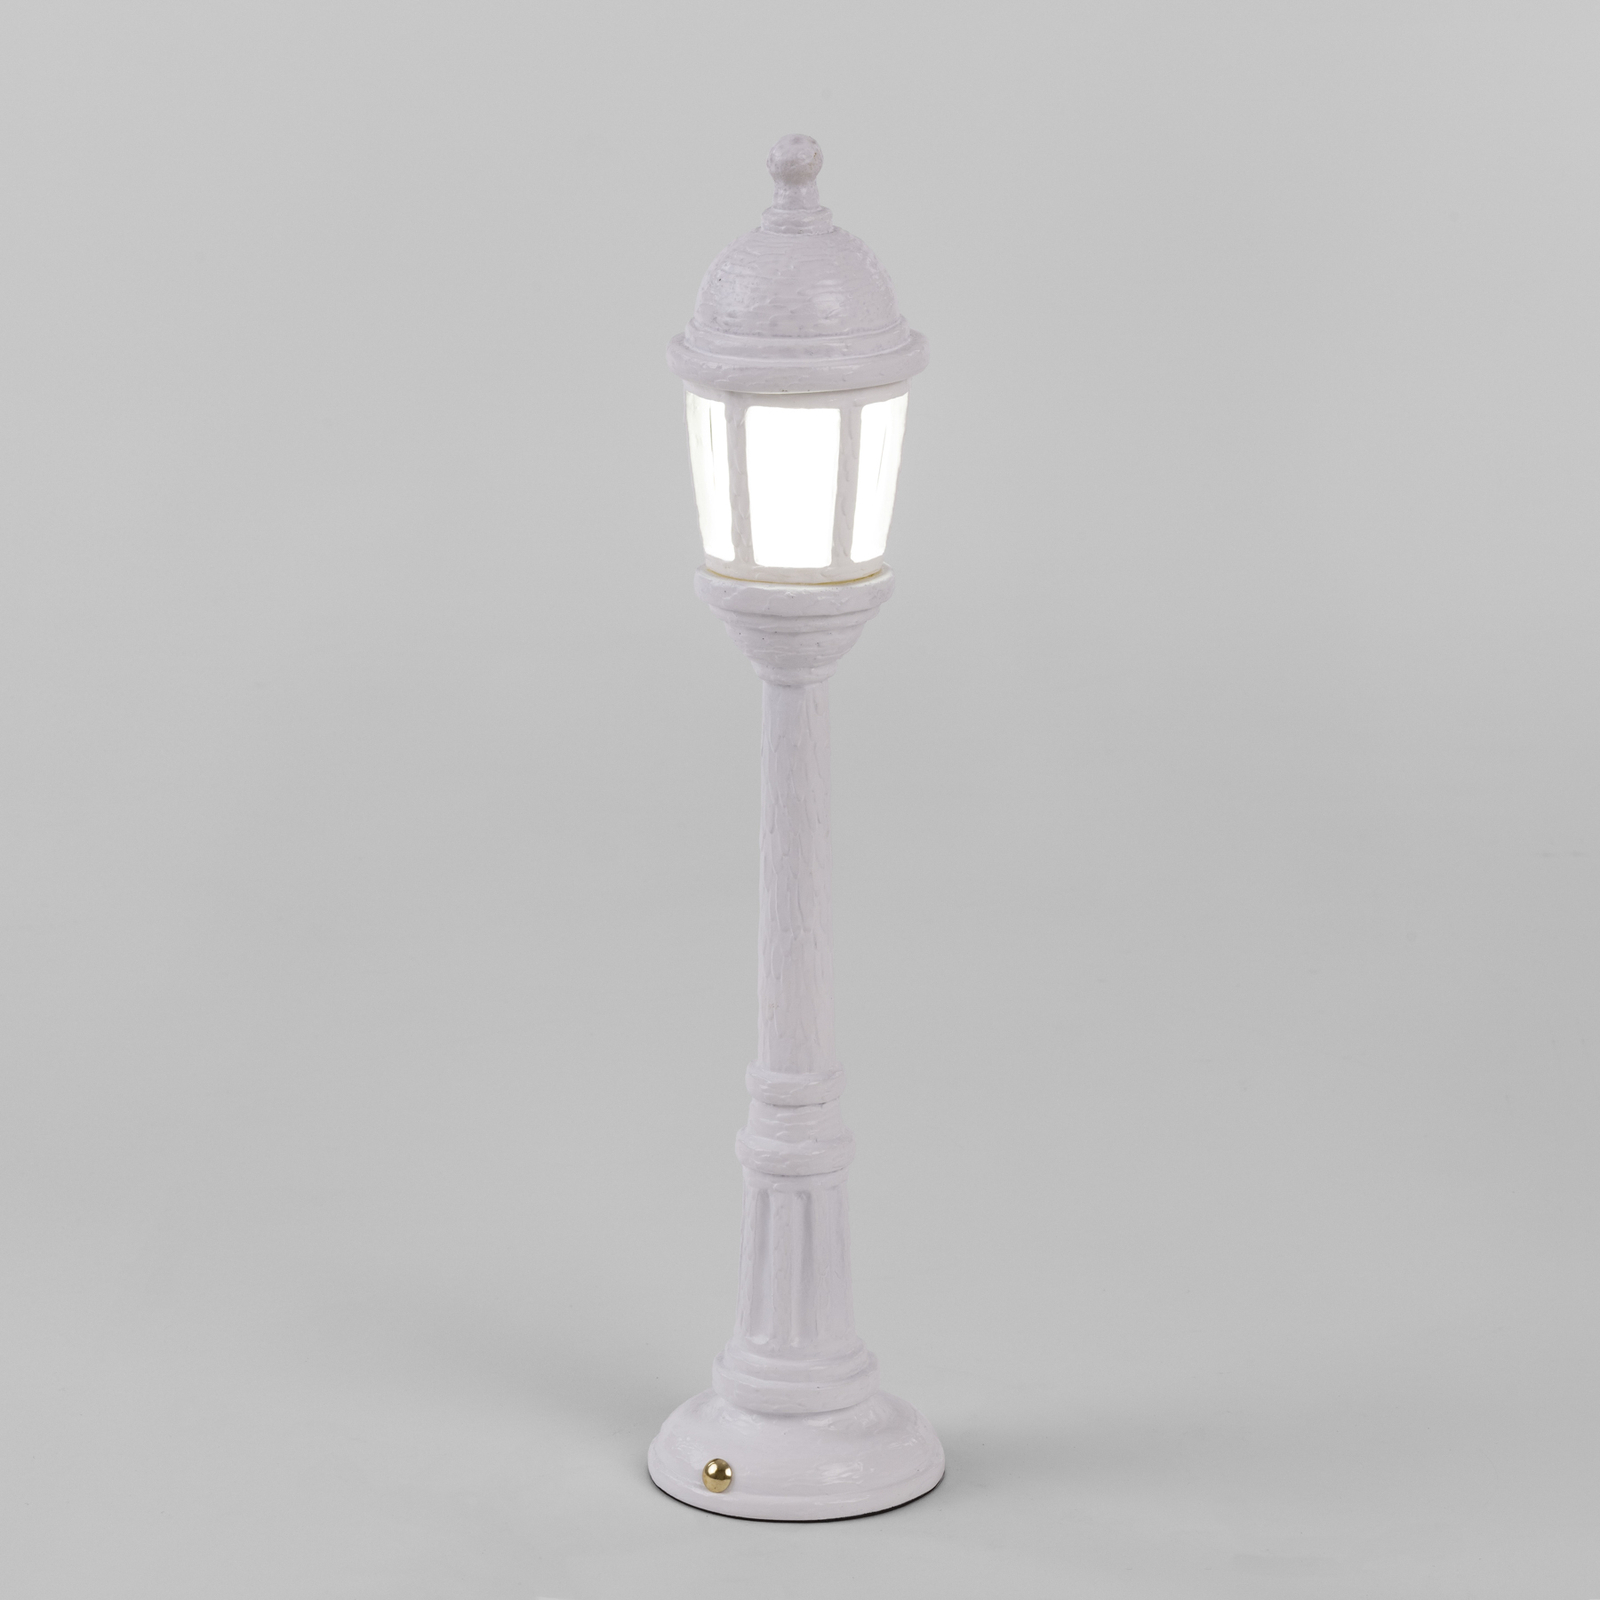 LED buiten sfeerlamp Street Lamp met accu, wit